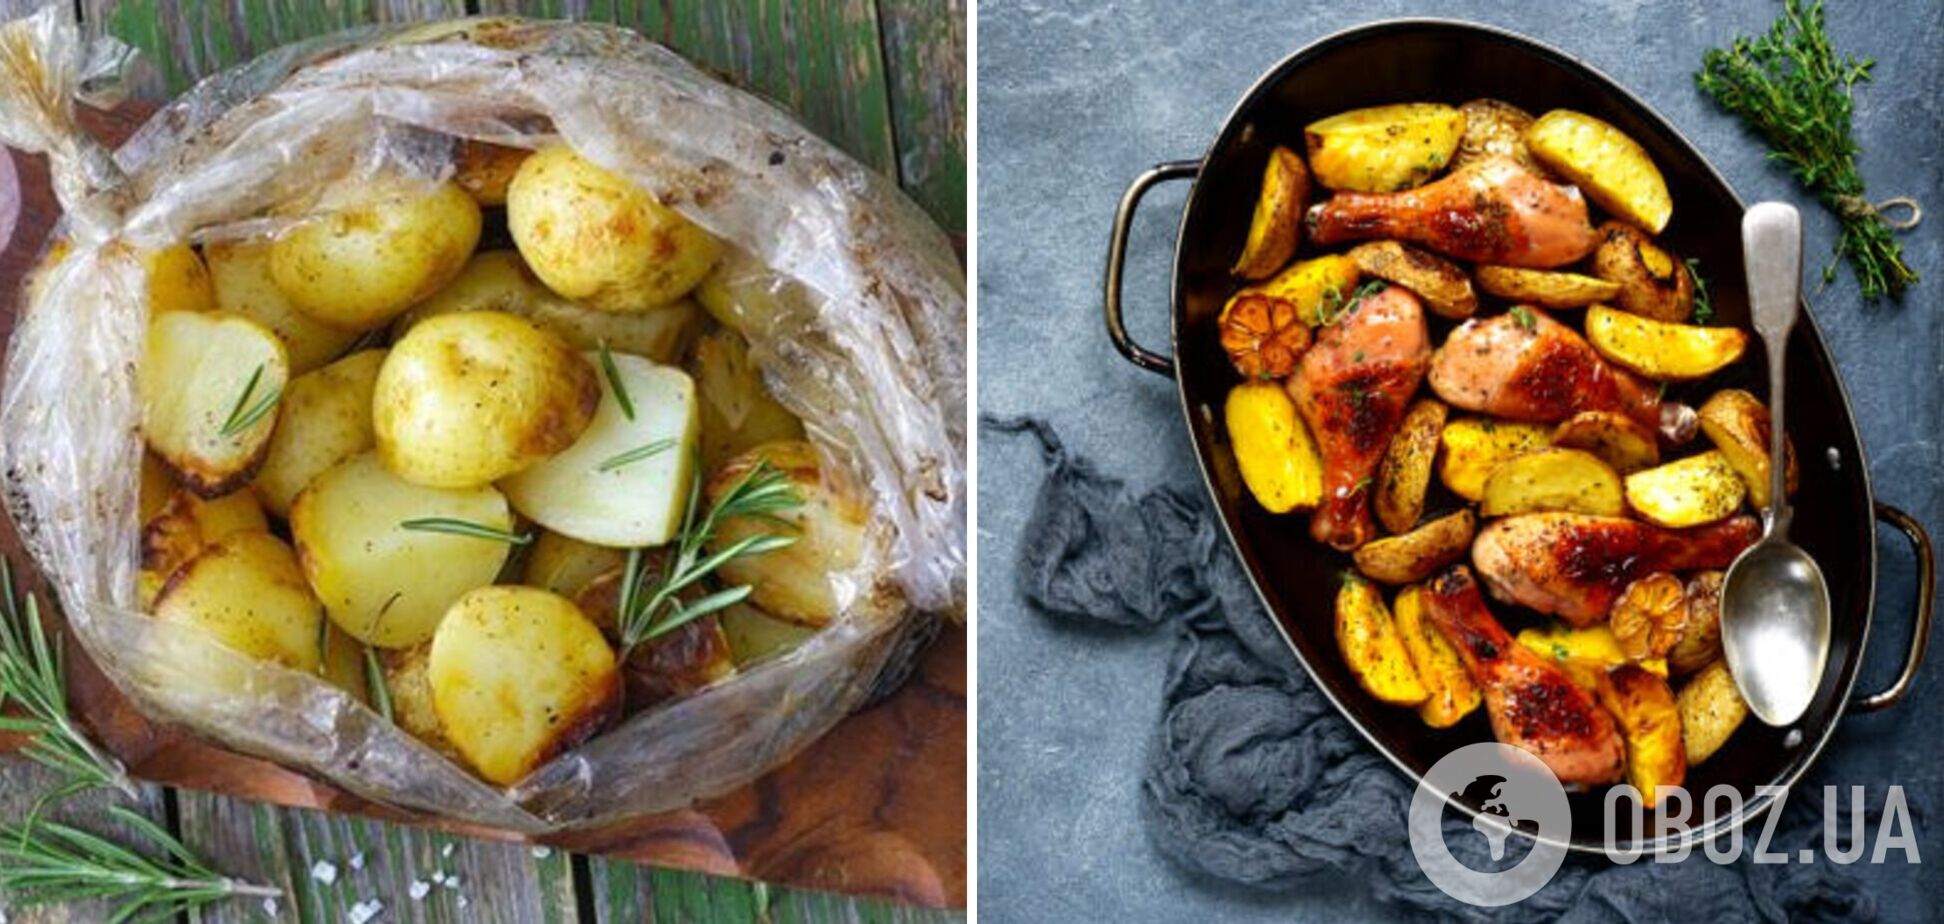 Как вкусно приготовить картофель с мясом в рукаве: удачный рецепт